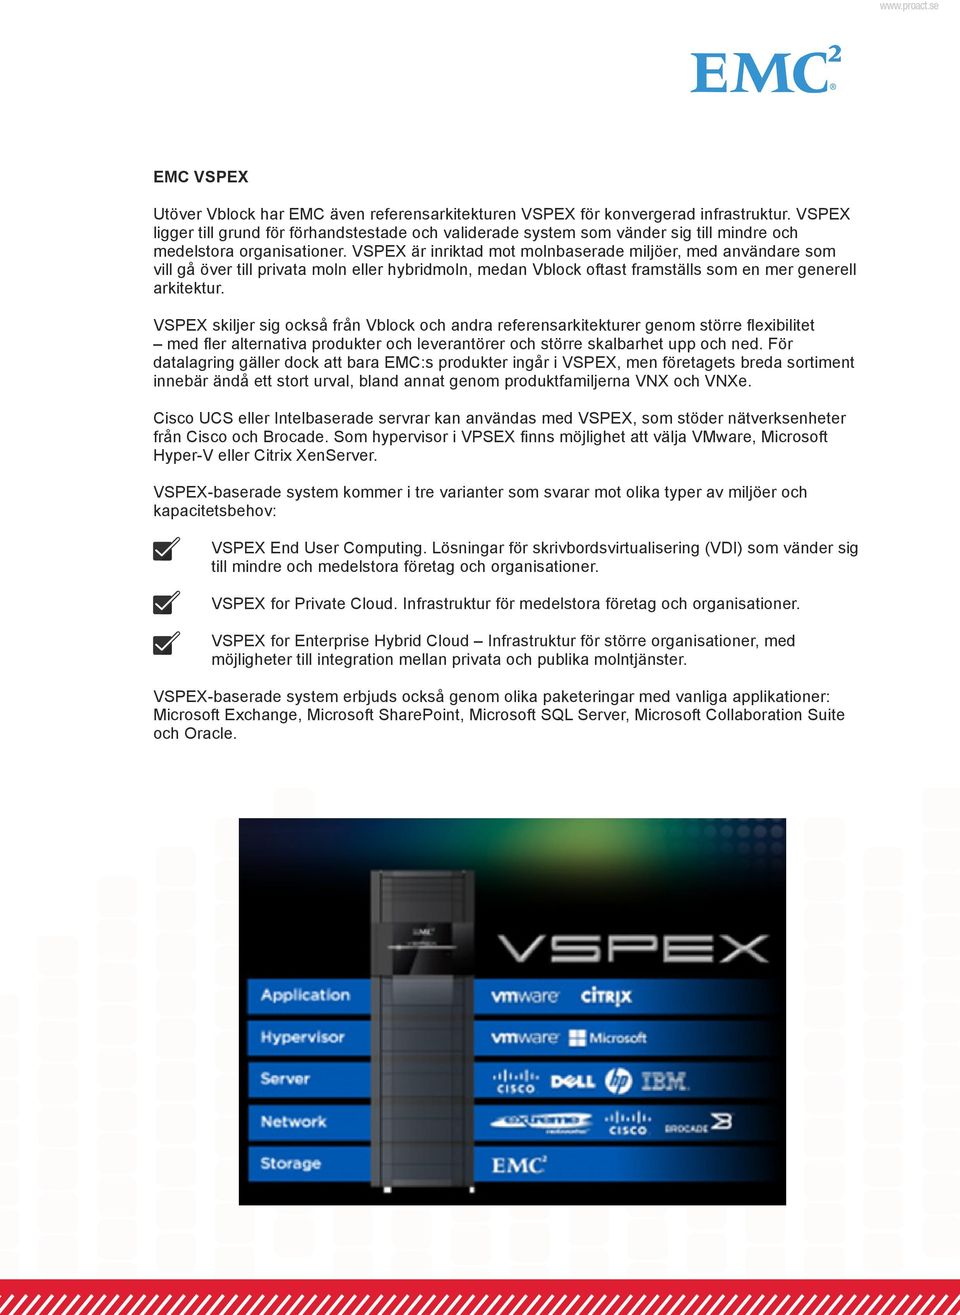 VSPEX är inriktad mot molnbaserade miljöer, med användare som vill gå över till privata moln eller hybridmoln, medan Vblock oftast framställs som en mer generell arkitektur.